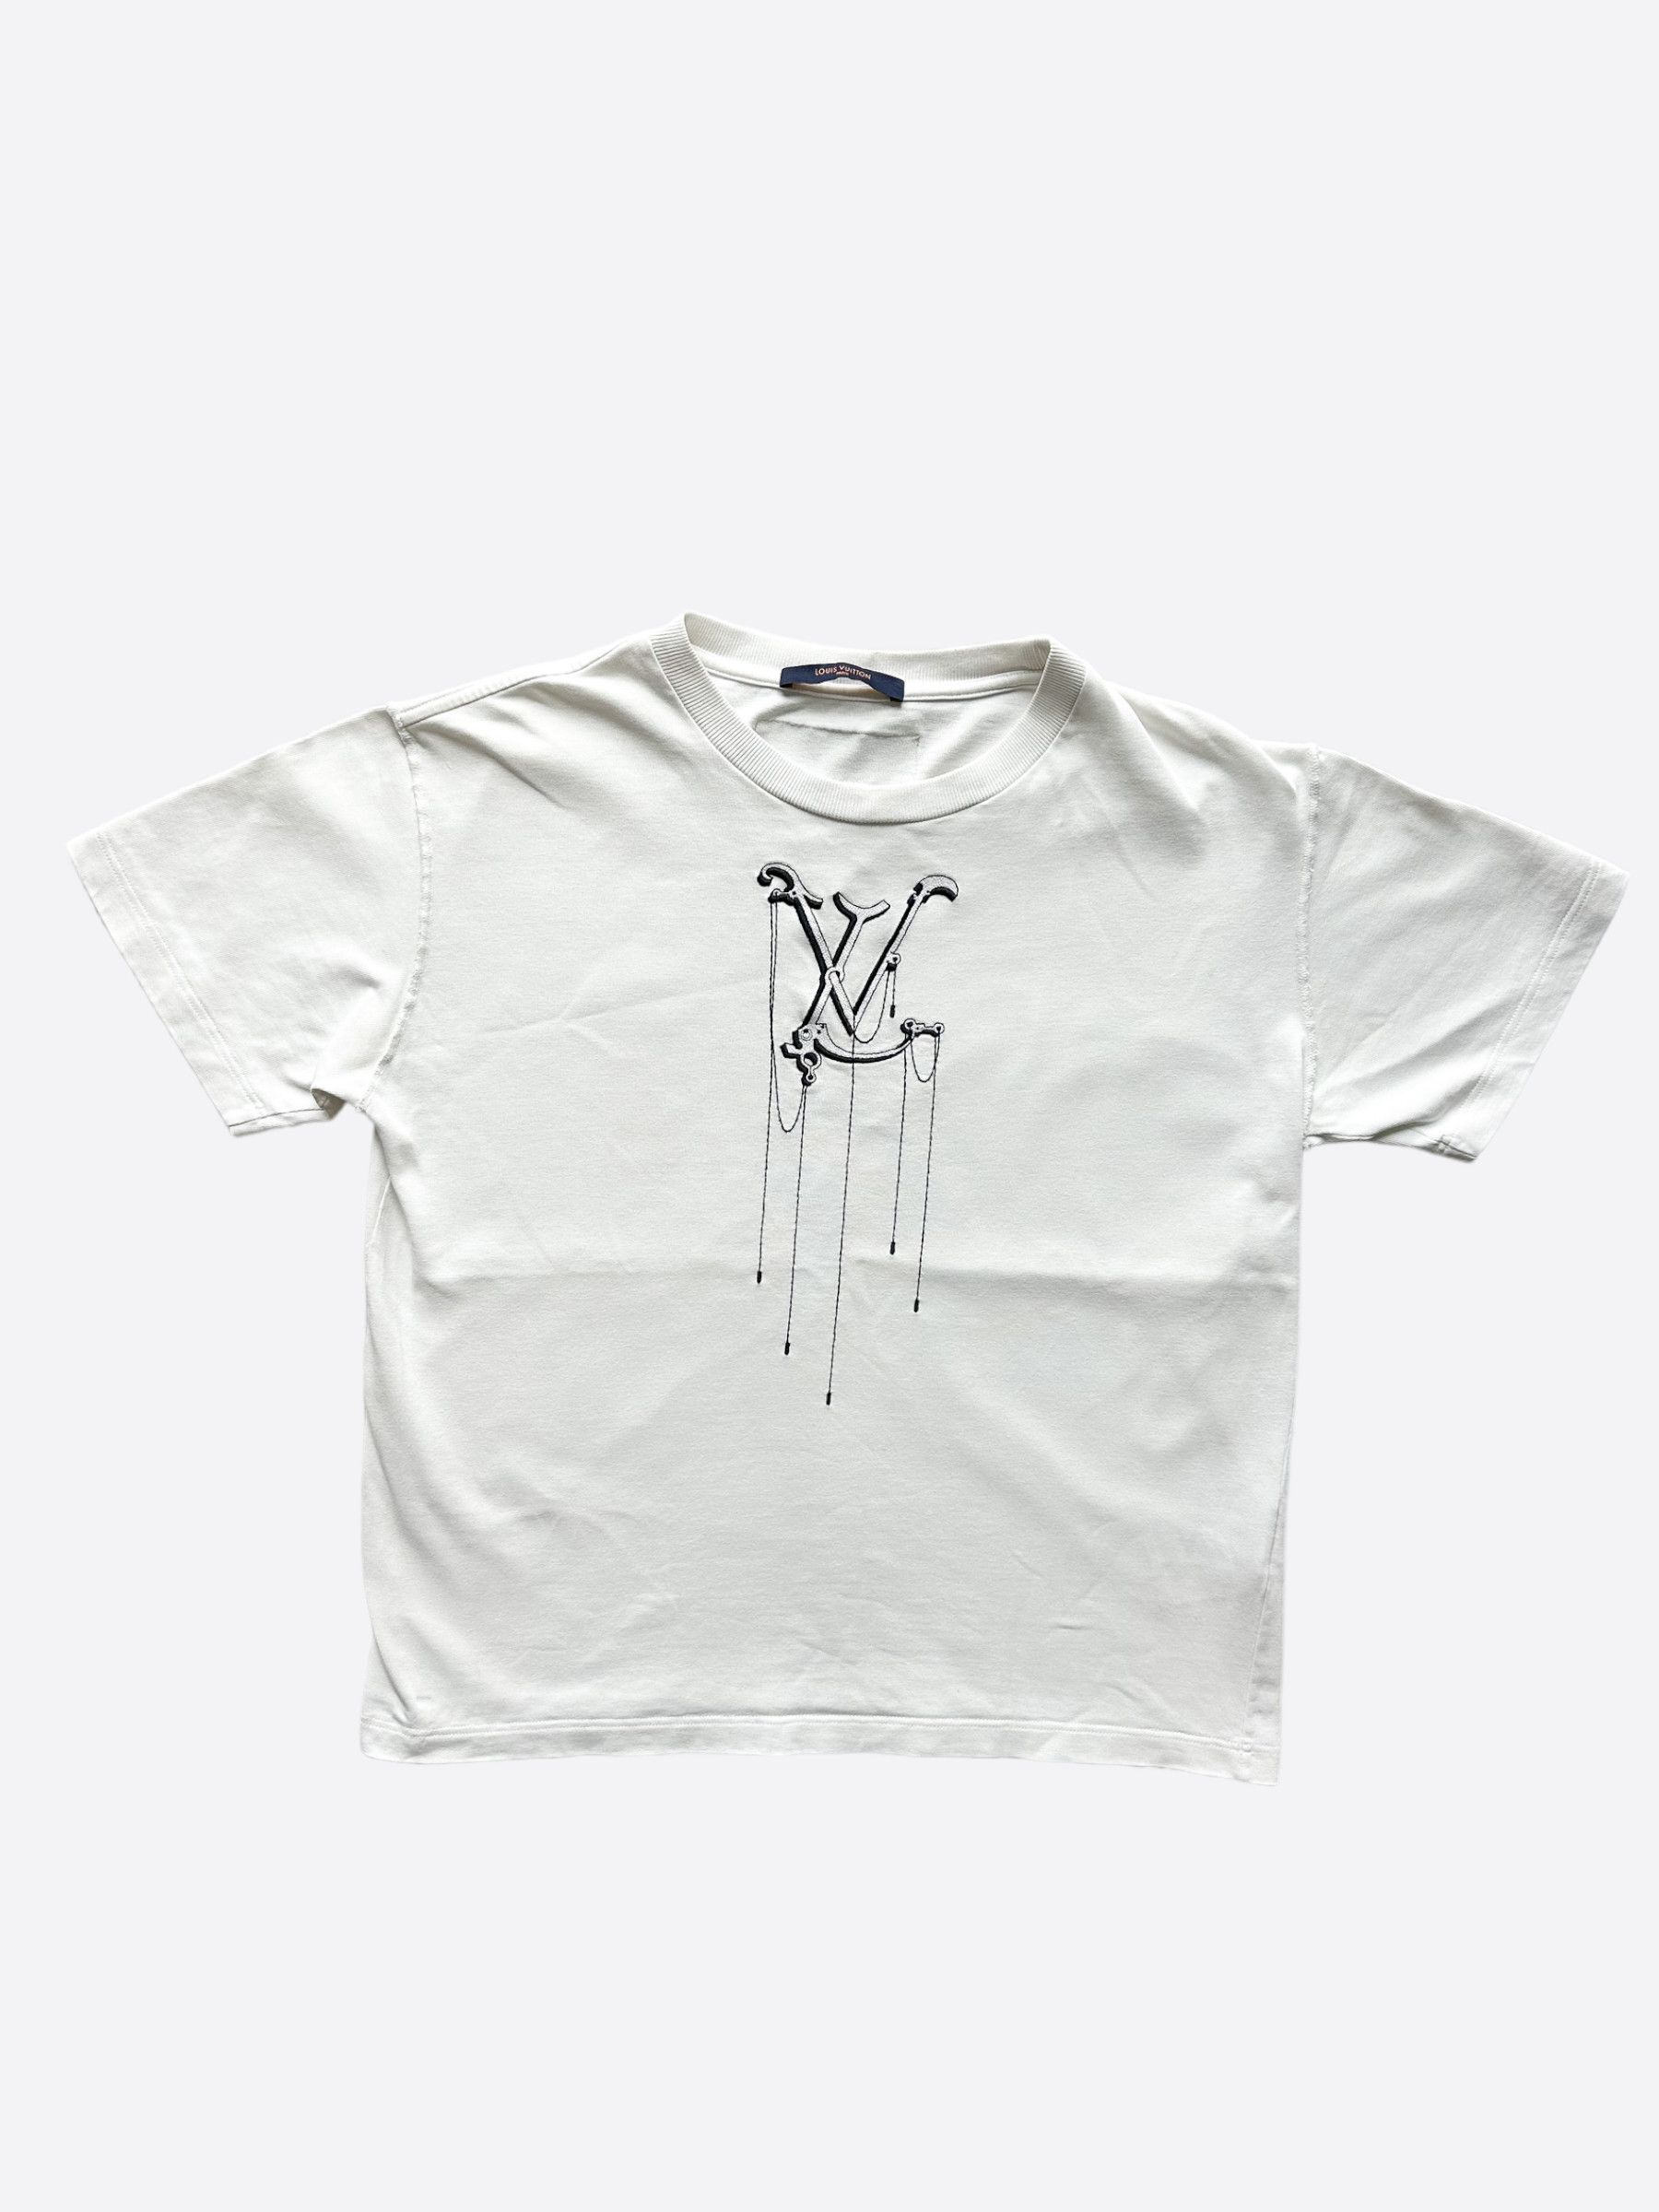 Auth Louis Vuitton Cotton T Shirt Men Size L White DO A KICKFLIP from Japan